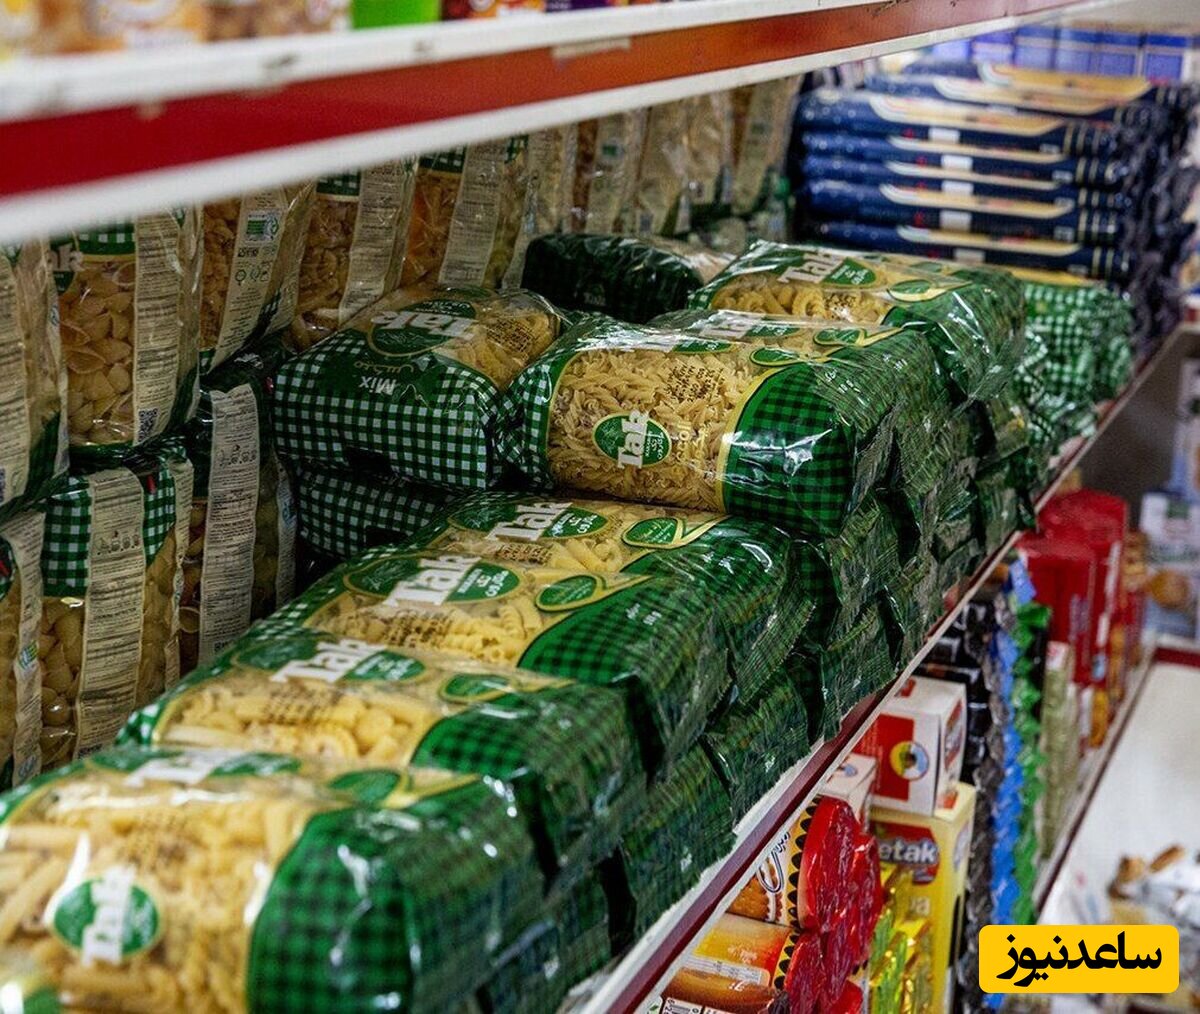 کار تحسین برانگیز یک بقال ایرانی در اطراف تبریز/ همه روستا کلید سوپرمارکتش را دارند!+عکس